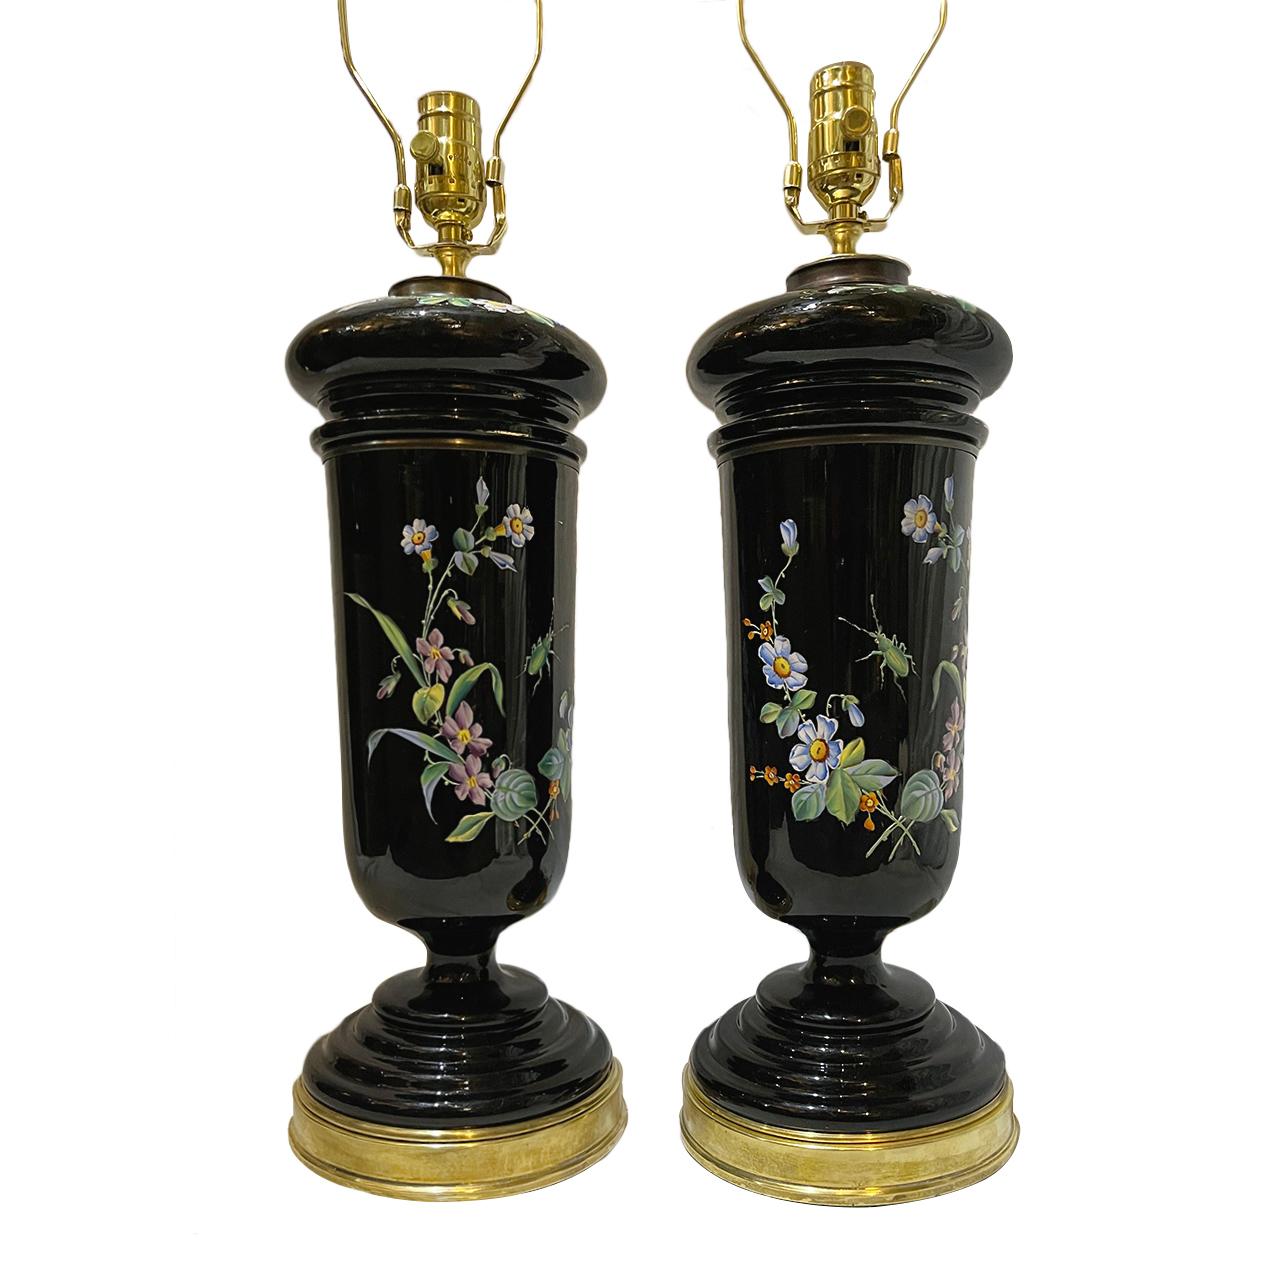 Coppia di lampade floreali in porcellana inglese del 1920 circa con basi dorate.

Misure:
Altezza del corpo: 17,5
Altezza del paralume: 27